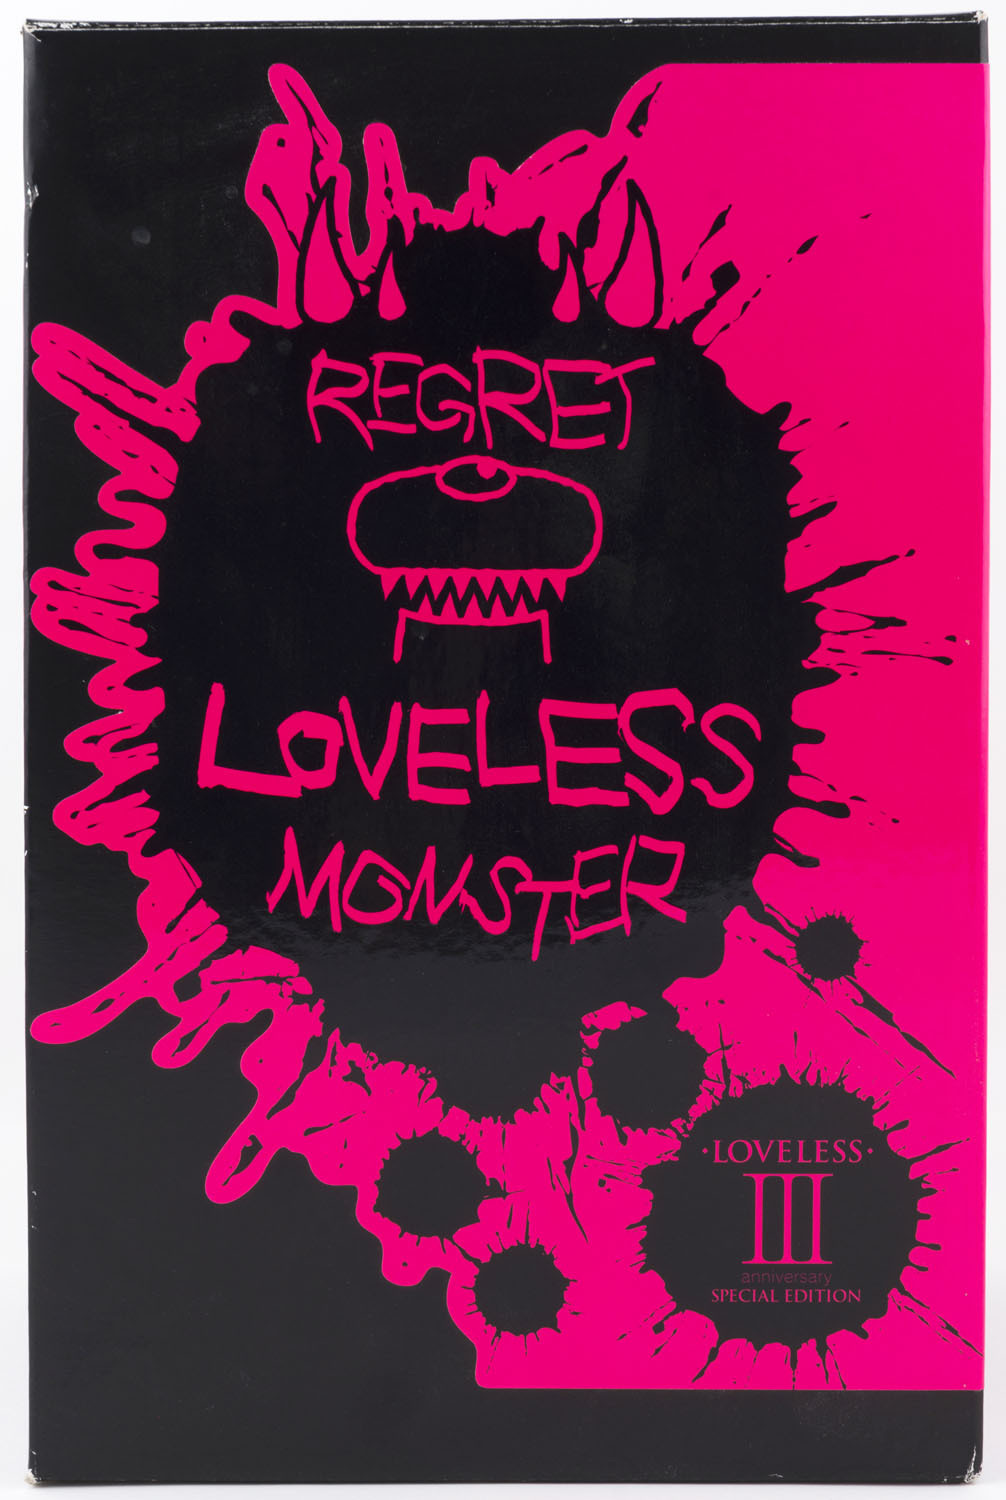 Loveless regret monster - キャラクターグッズ